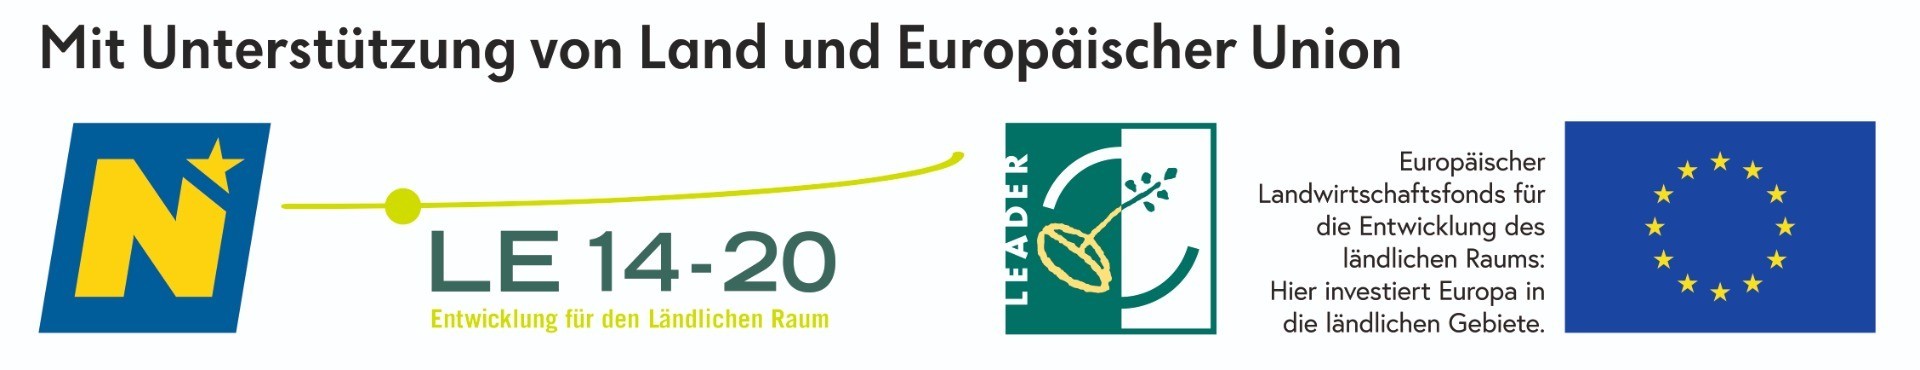 Logoleiste_eco_2020-12.jpg